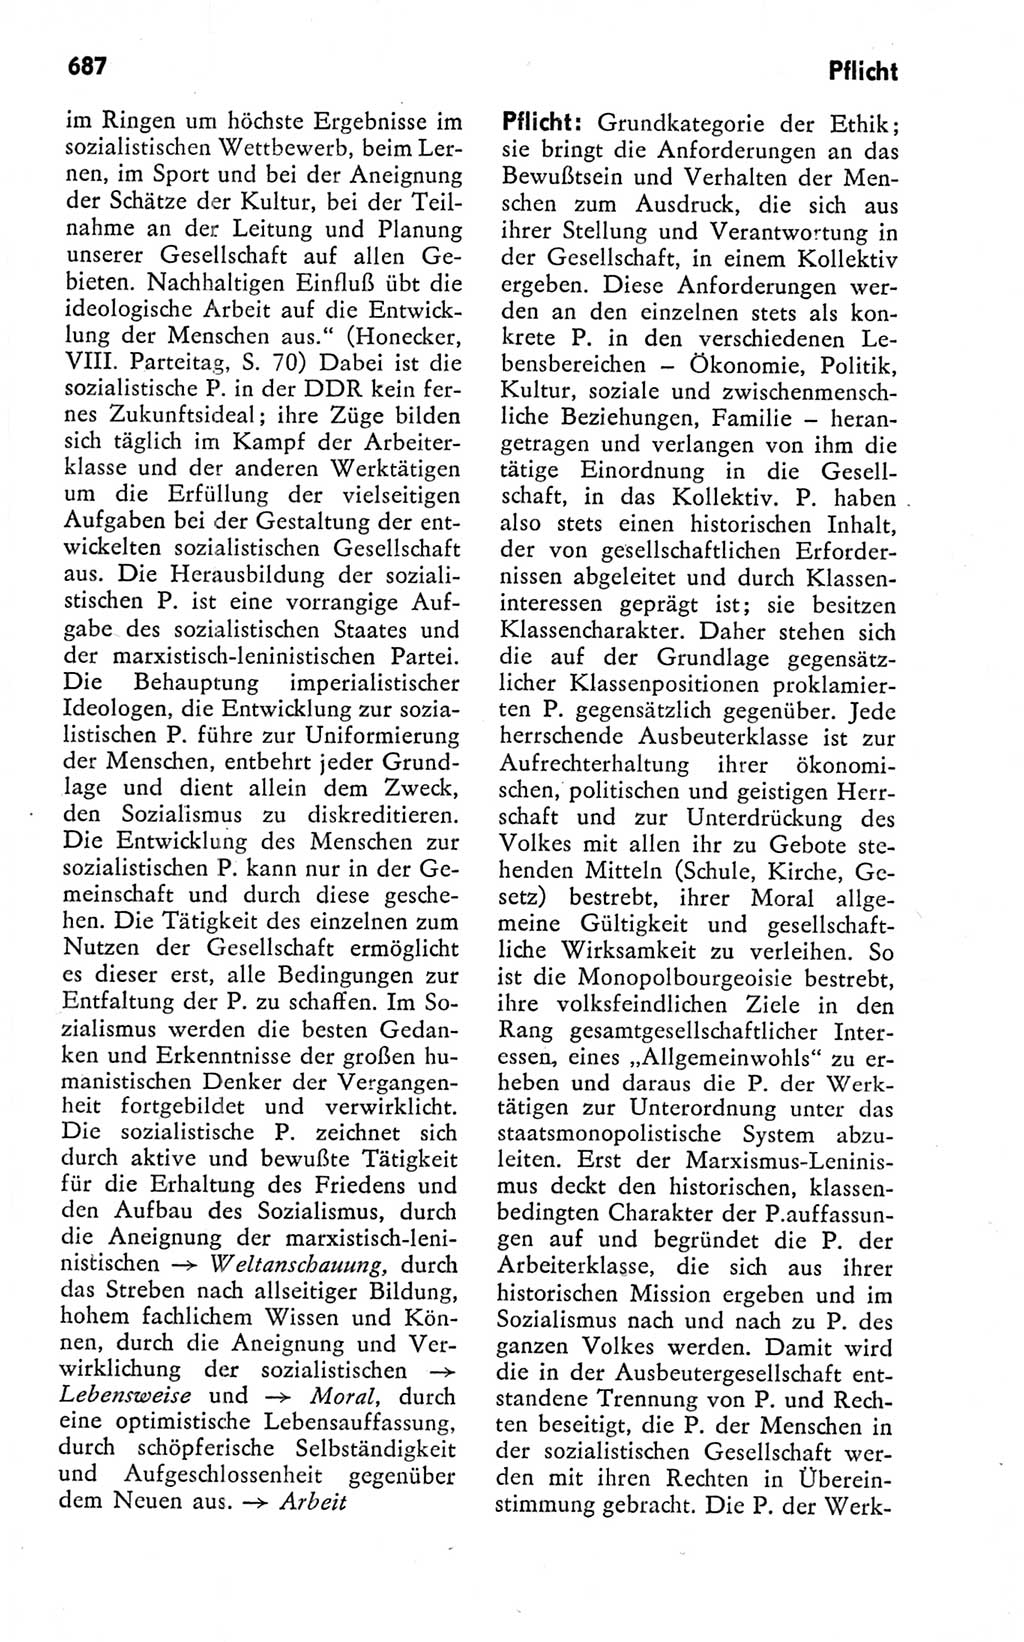 Kleines politisches Wörterbuch [Deutsche Demokratische Republik (DDR)] 1978, Seite 687 (Kl. pol. Wb. DDR 1978, S. 687)